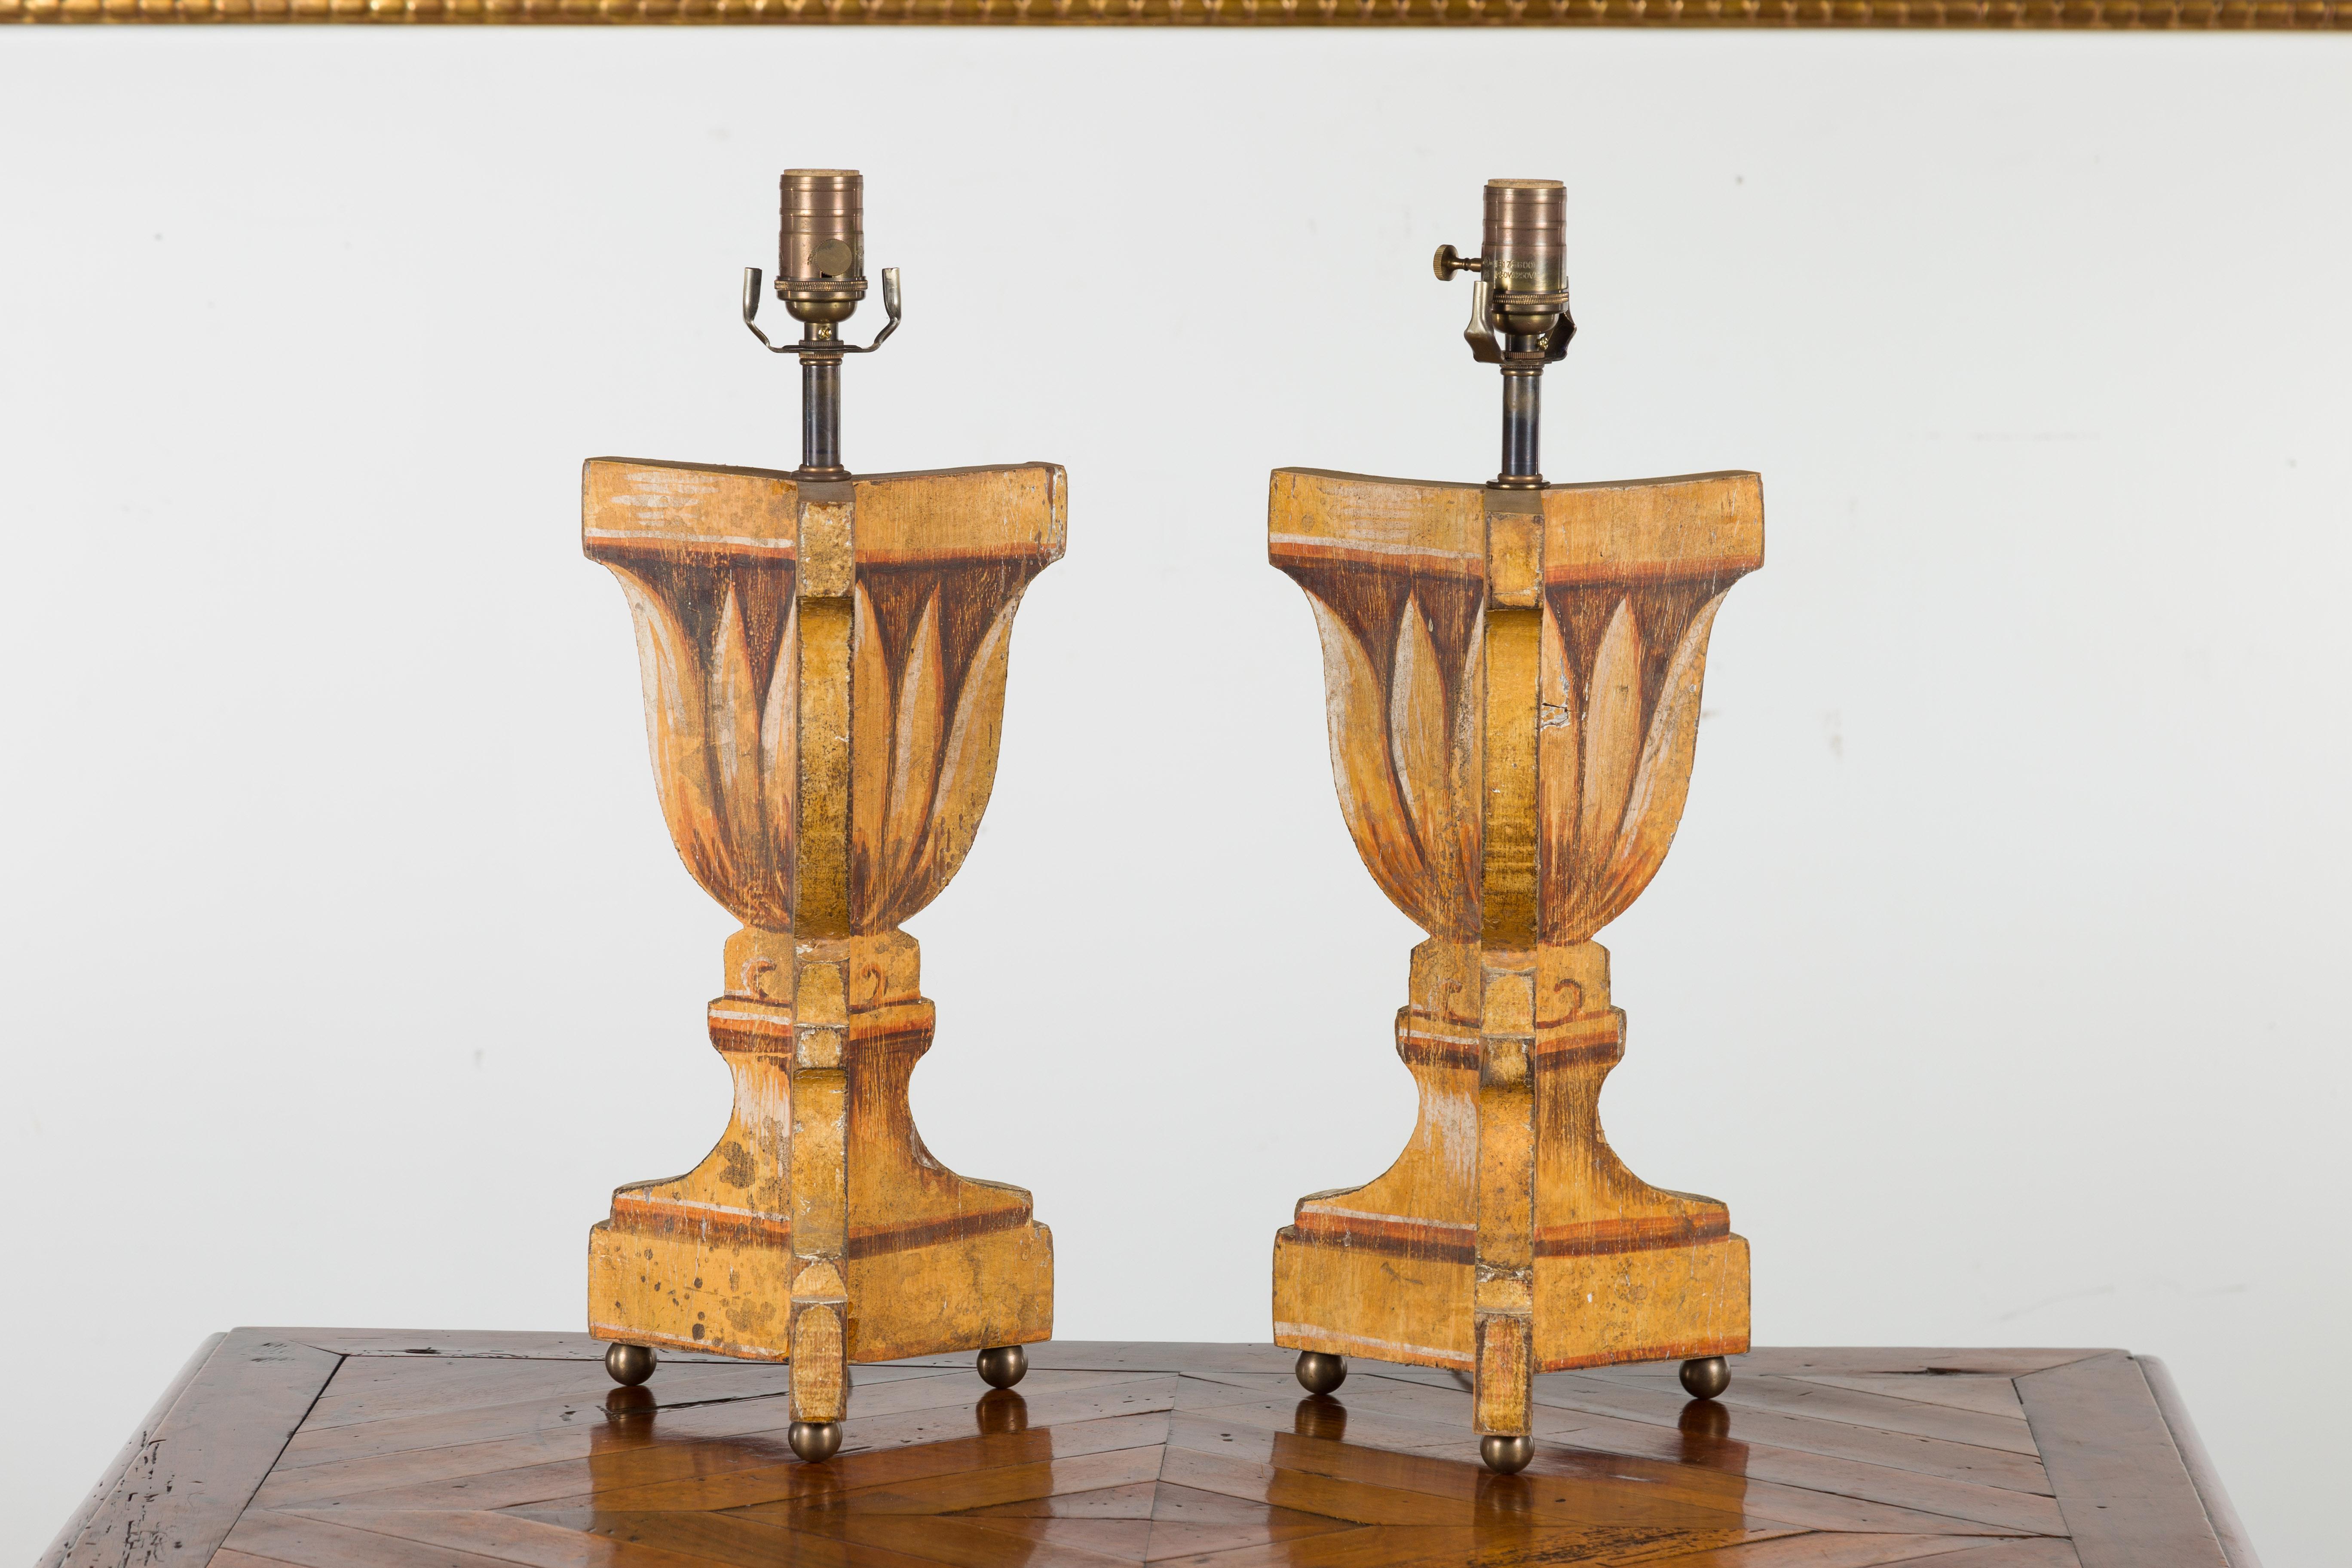 Une paire de lampes de table italiennes peintes et sculptées du milieu du 20e siècle, avec un décor de feuillage stylisé et de petits pieds en forme de boule. Créée en Italie au milieu du siècle dernier, cette paire de lampes de table présente un